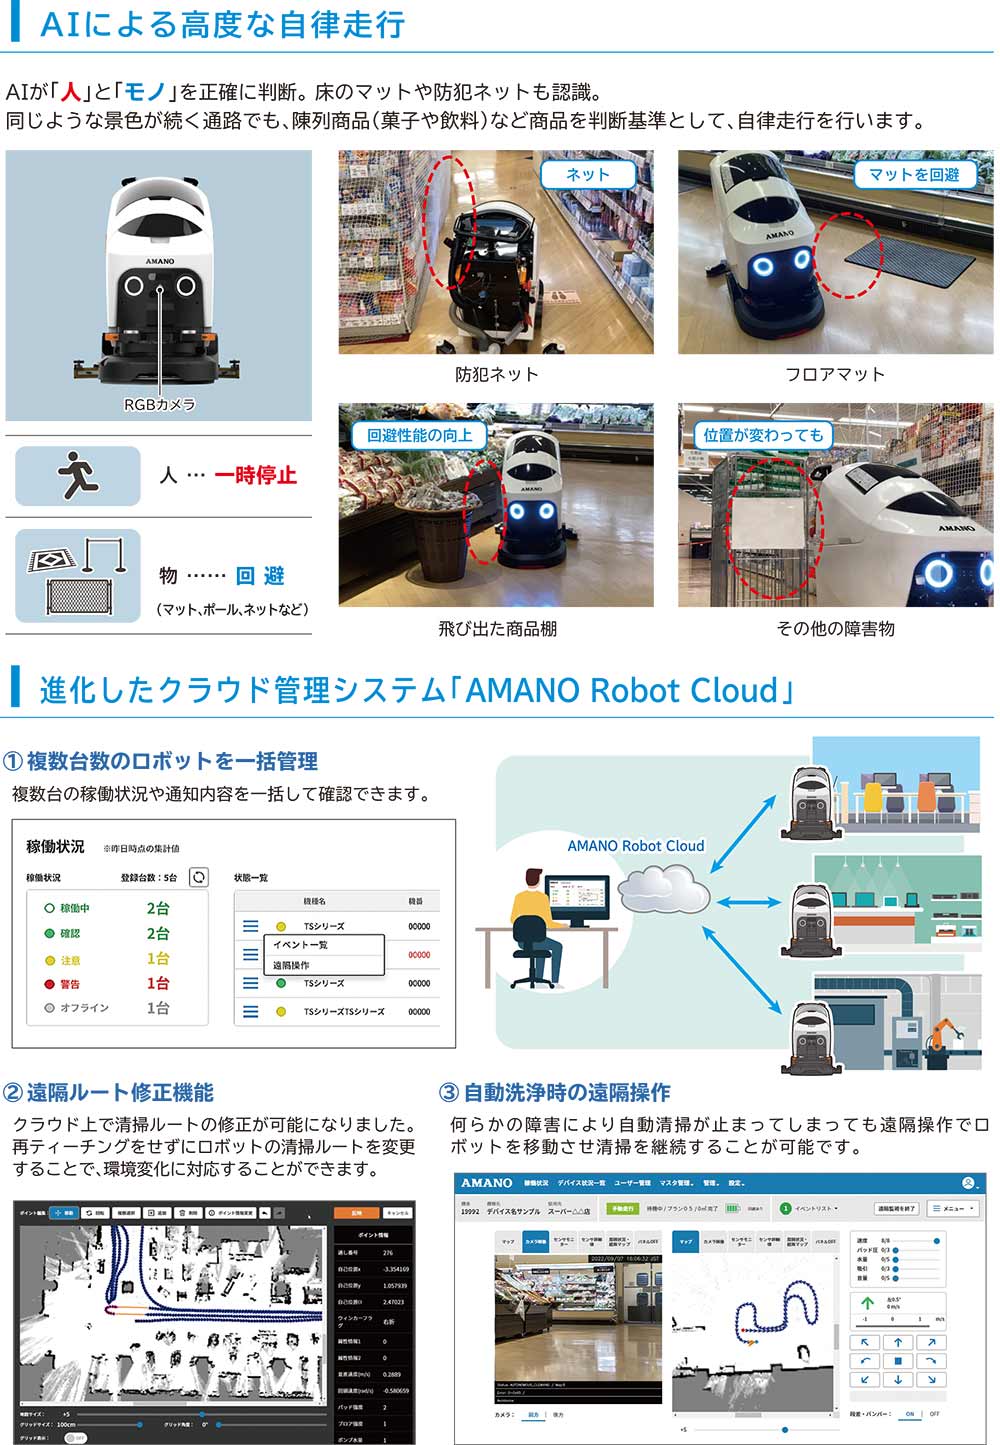 アマノ HAPiiBOT(ハピボット) - 小型床洗浄ロボット 01